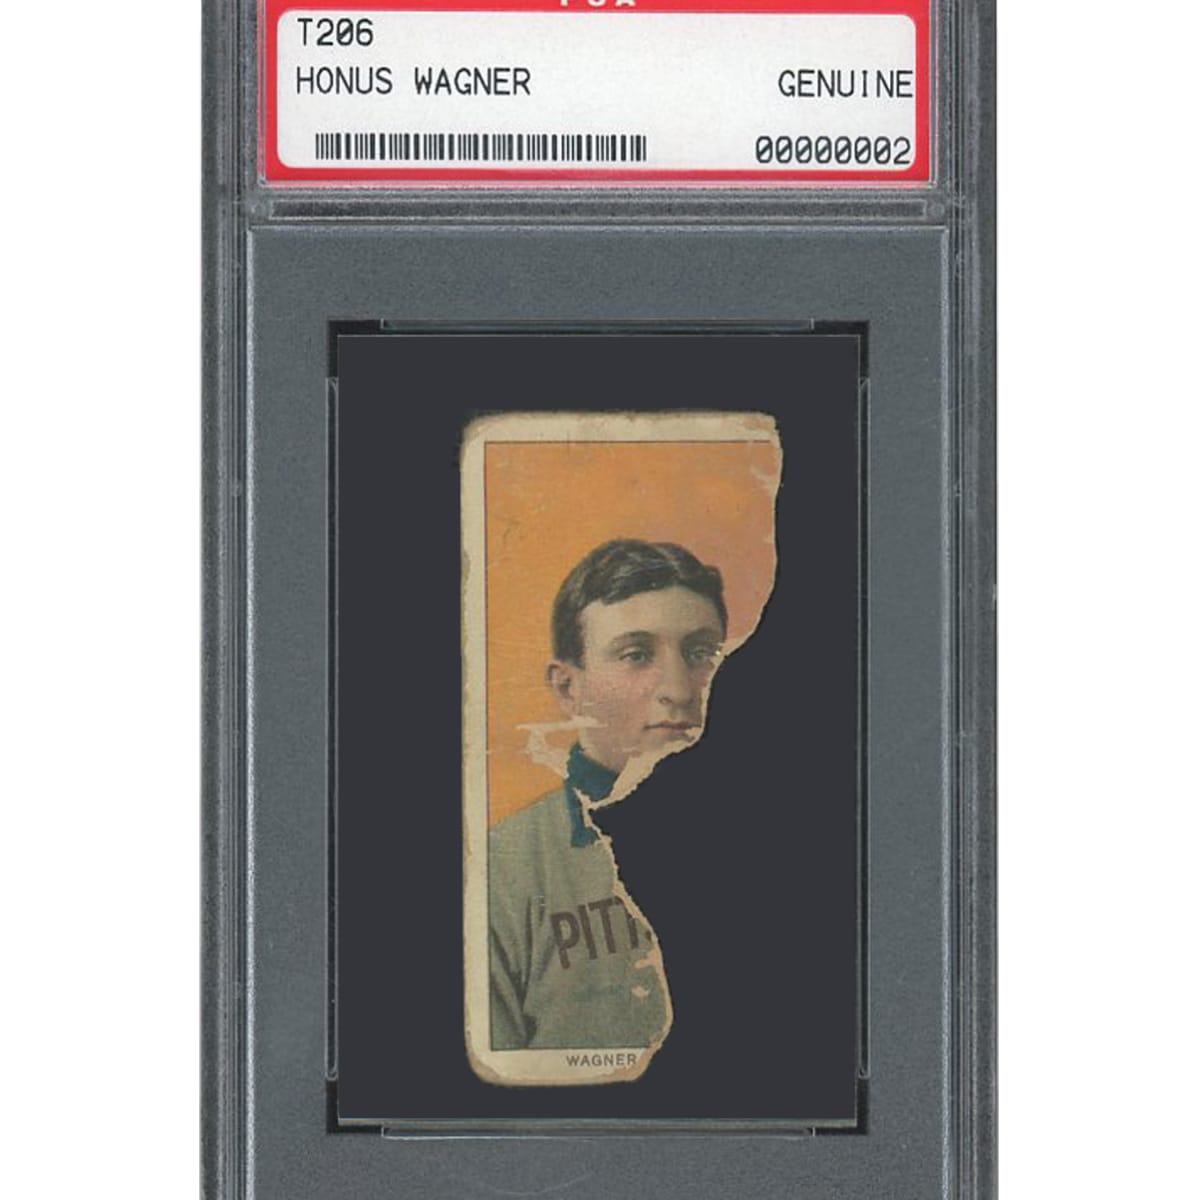 T206 Honus Wagner Sells for $7.25 Million, Highest Ever for Baseball Card